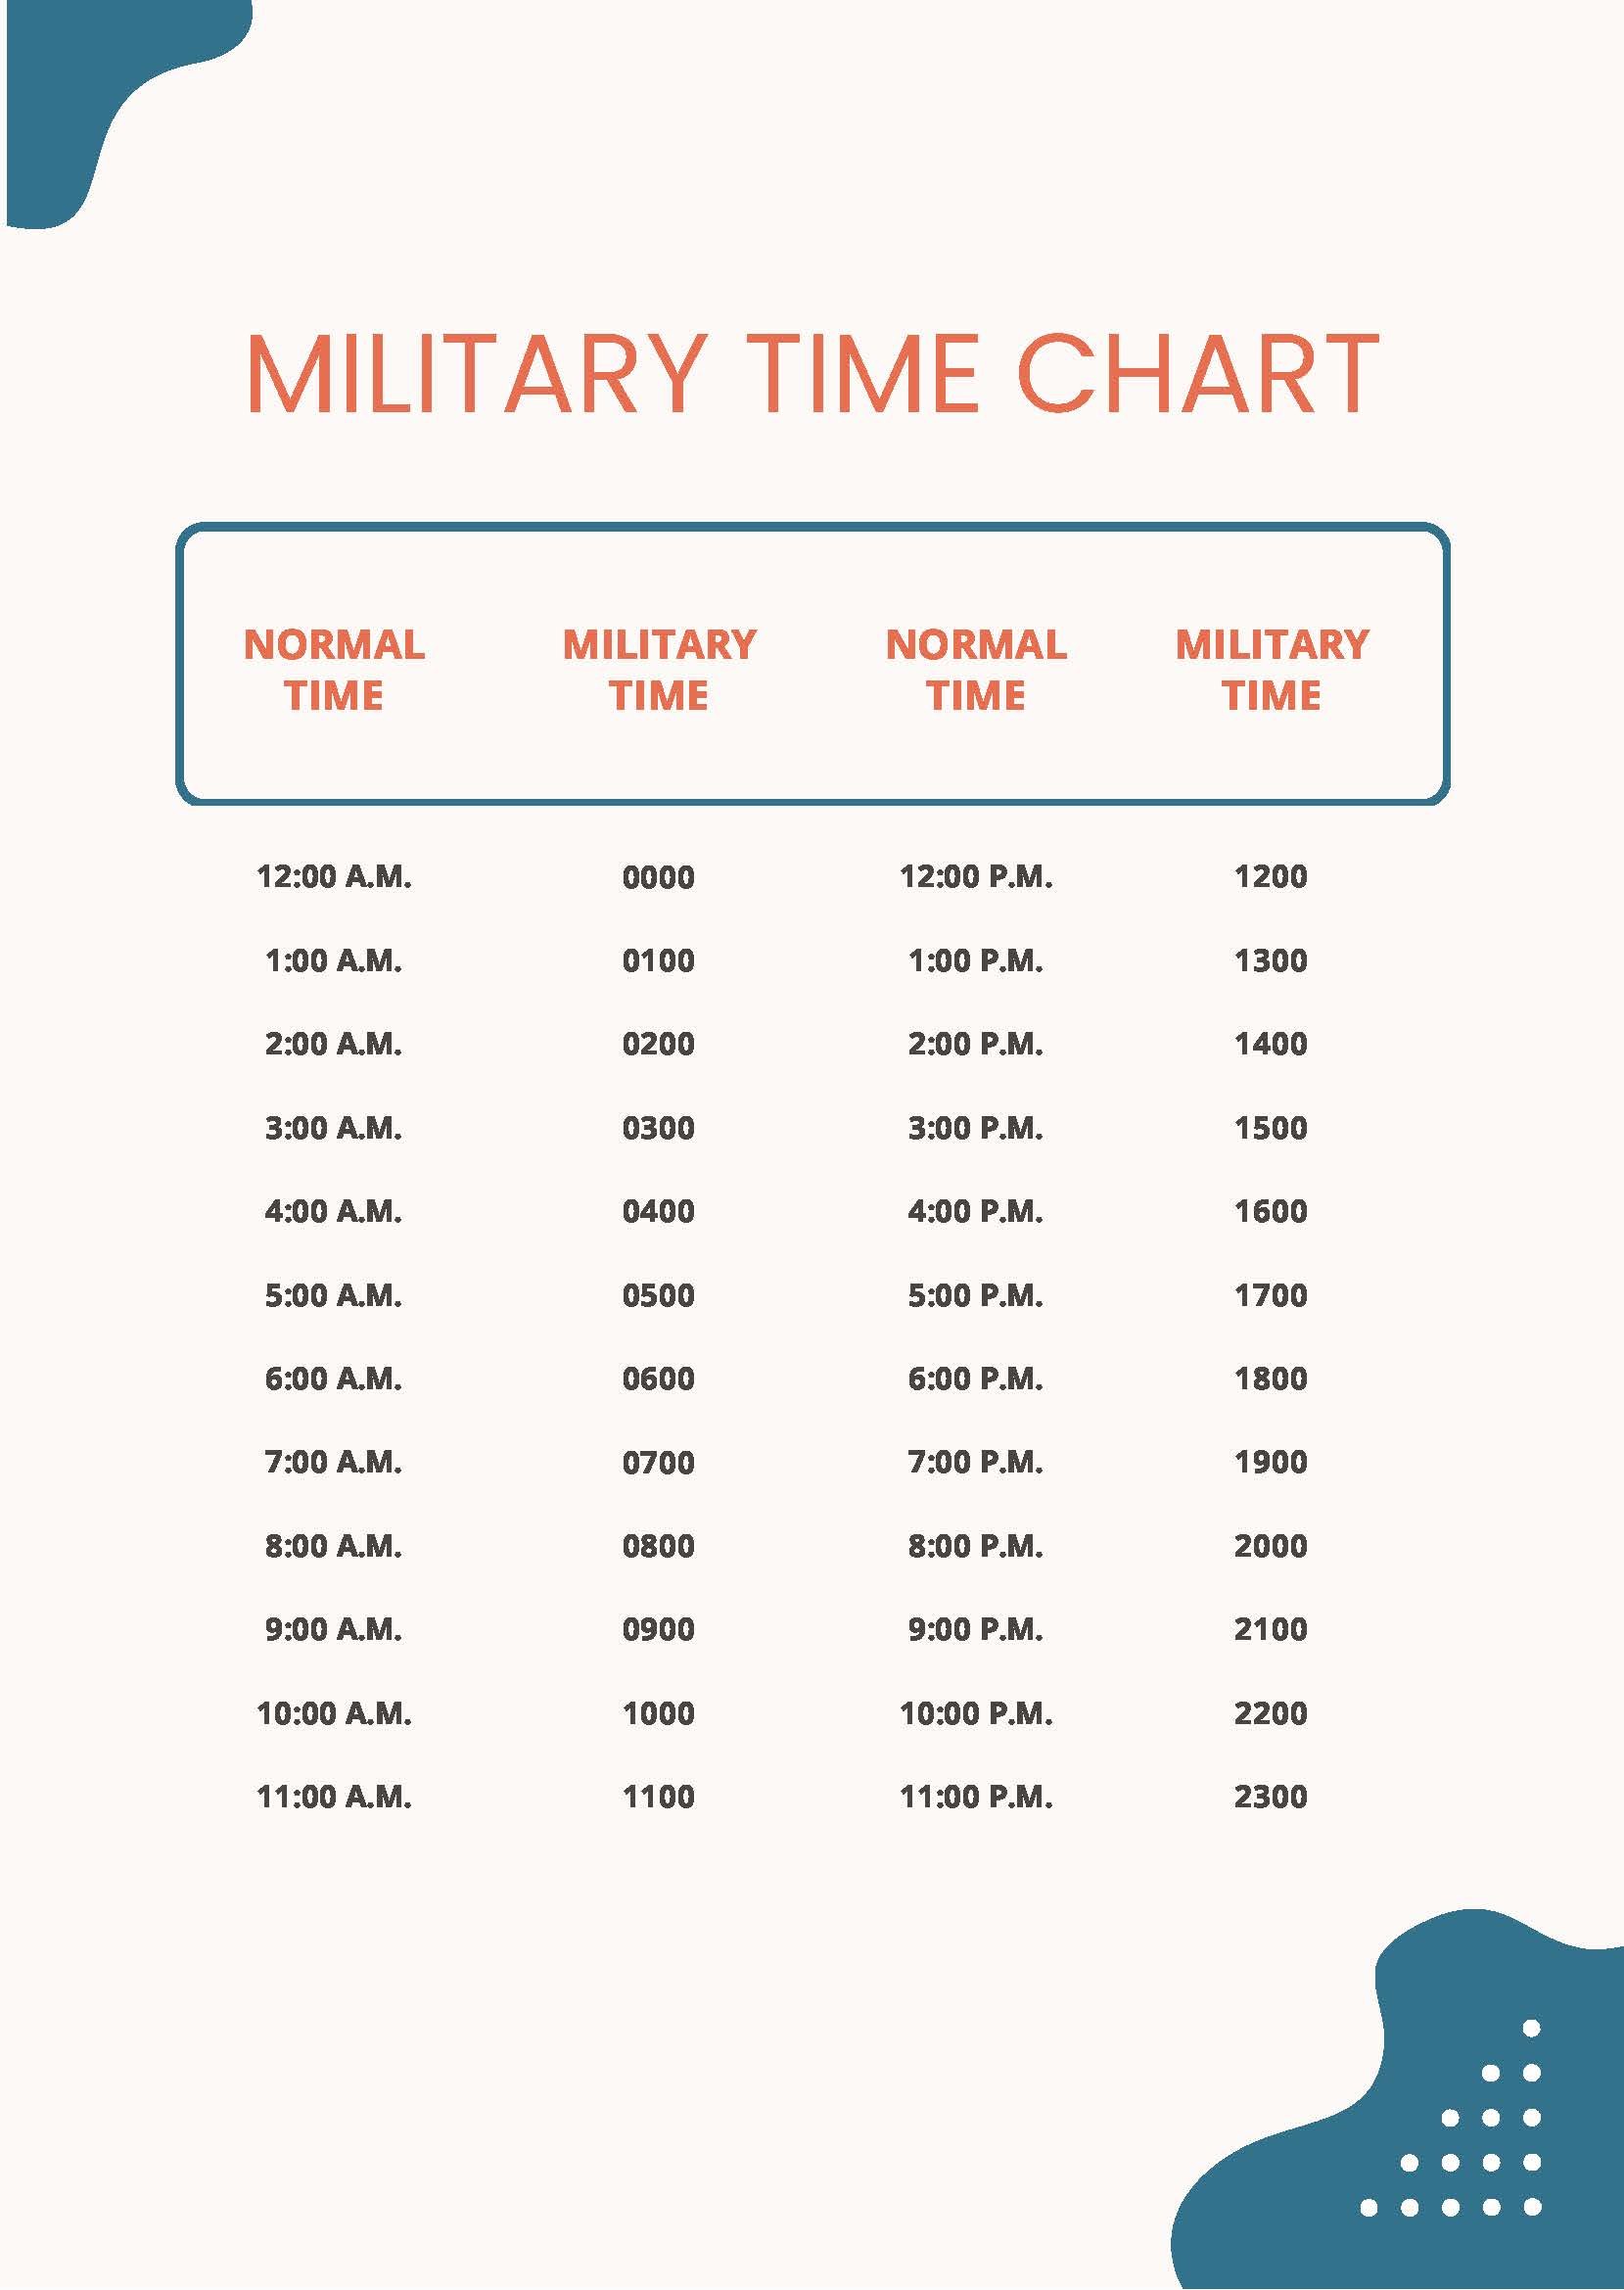 military-time-chart-printable-24-hour-time-conversion-chart-lupon-gov-ph